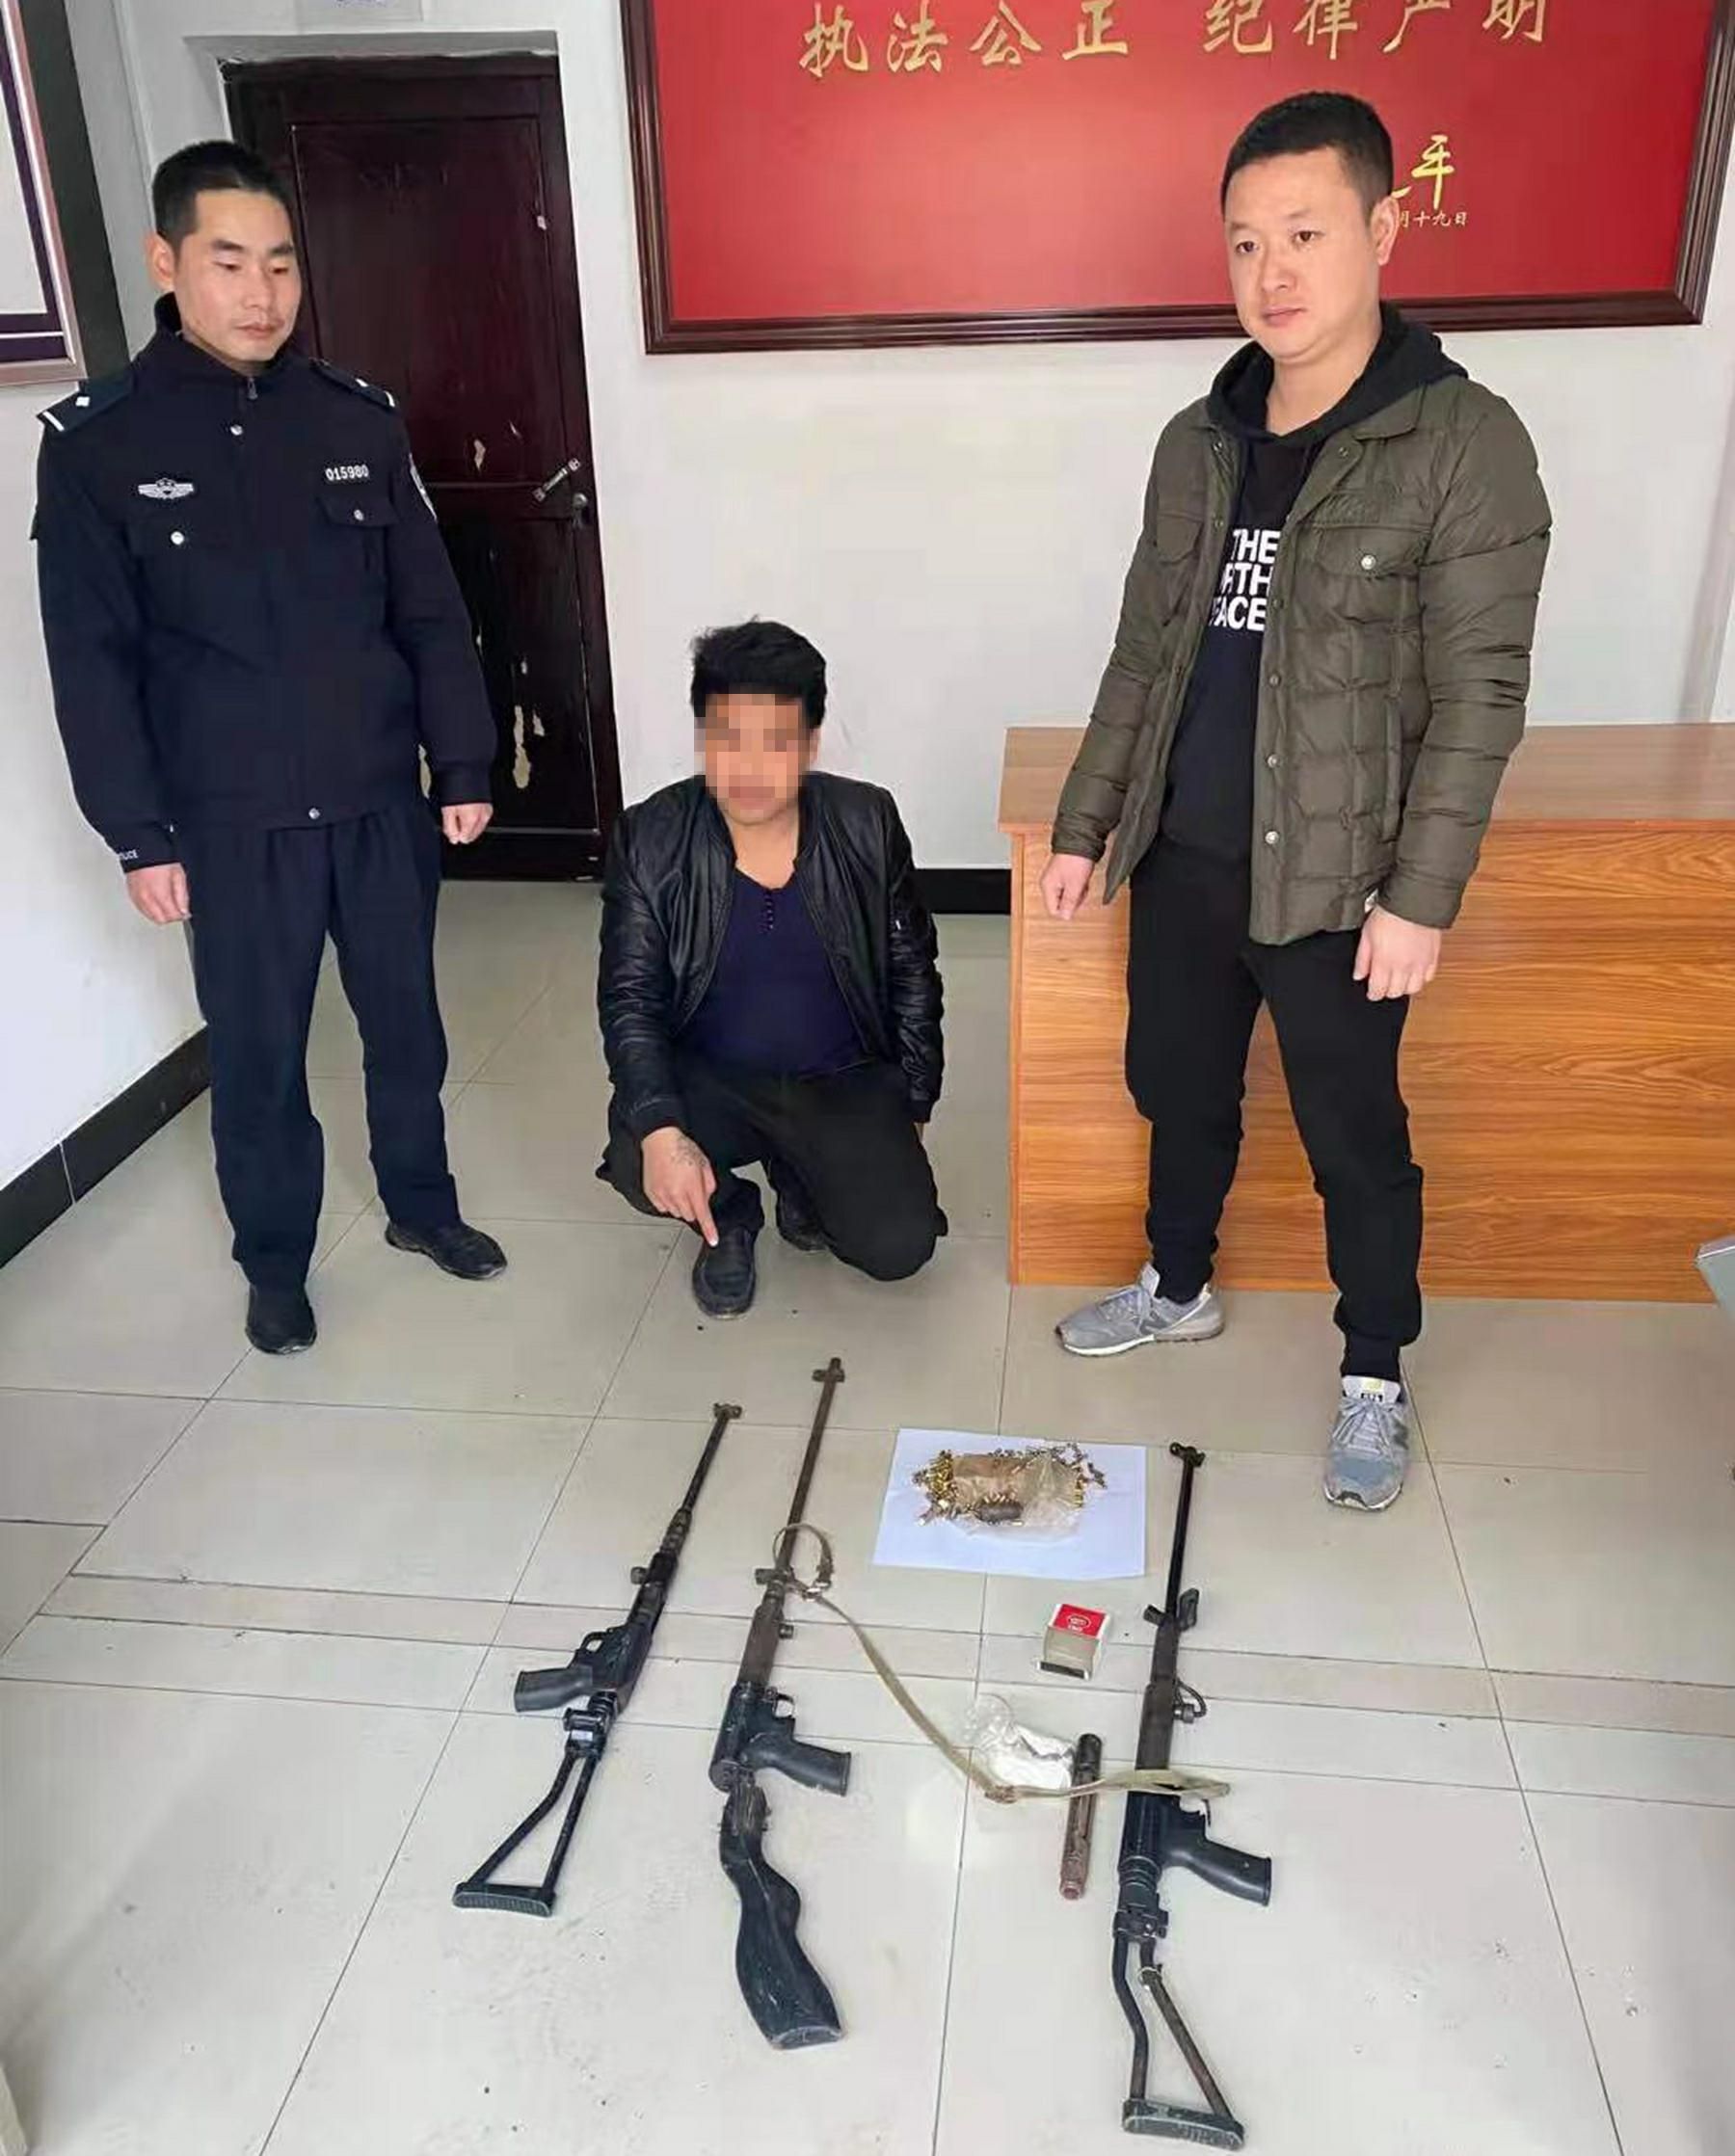 
广西贵港市捣毁一个非法制枪窝点抓获8名犯罪嫌疑人